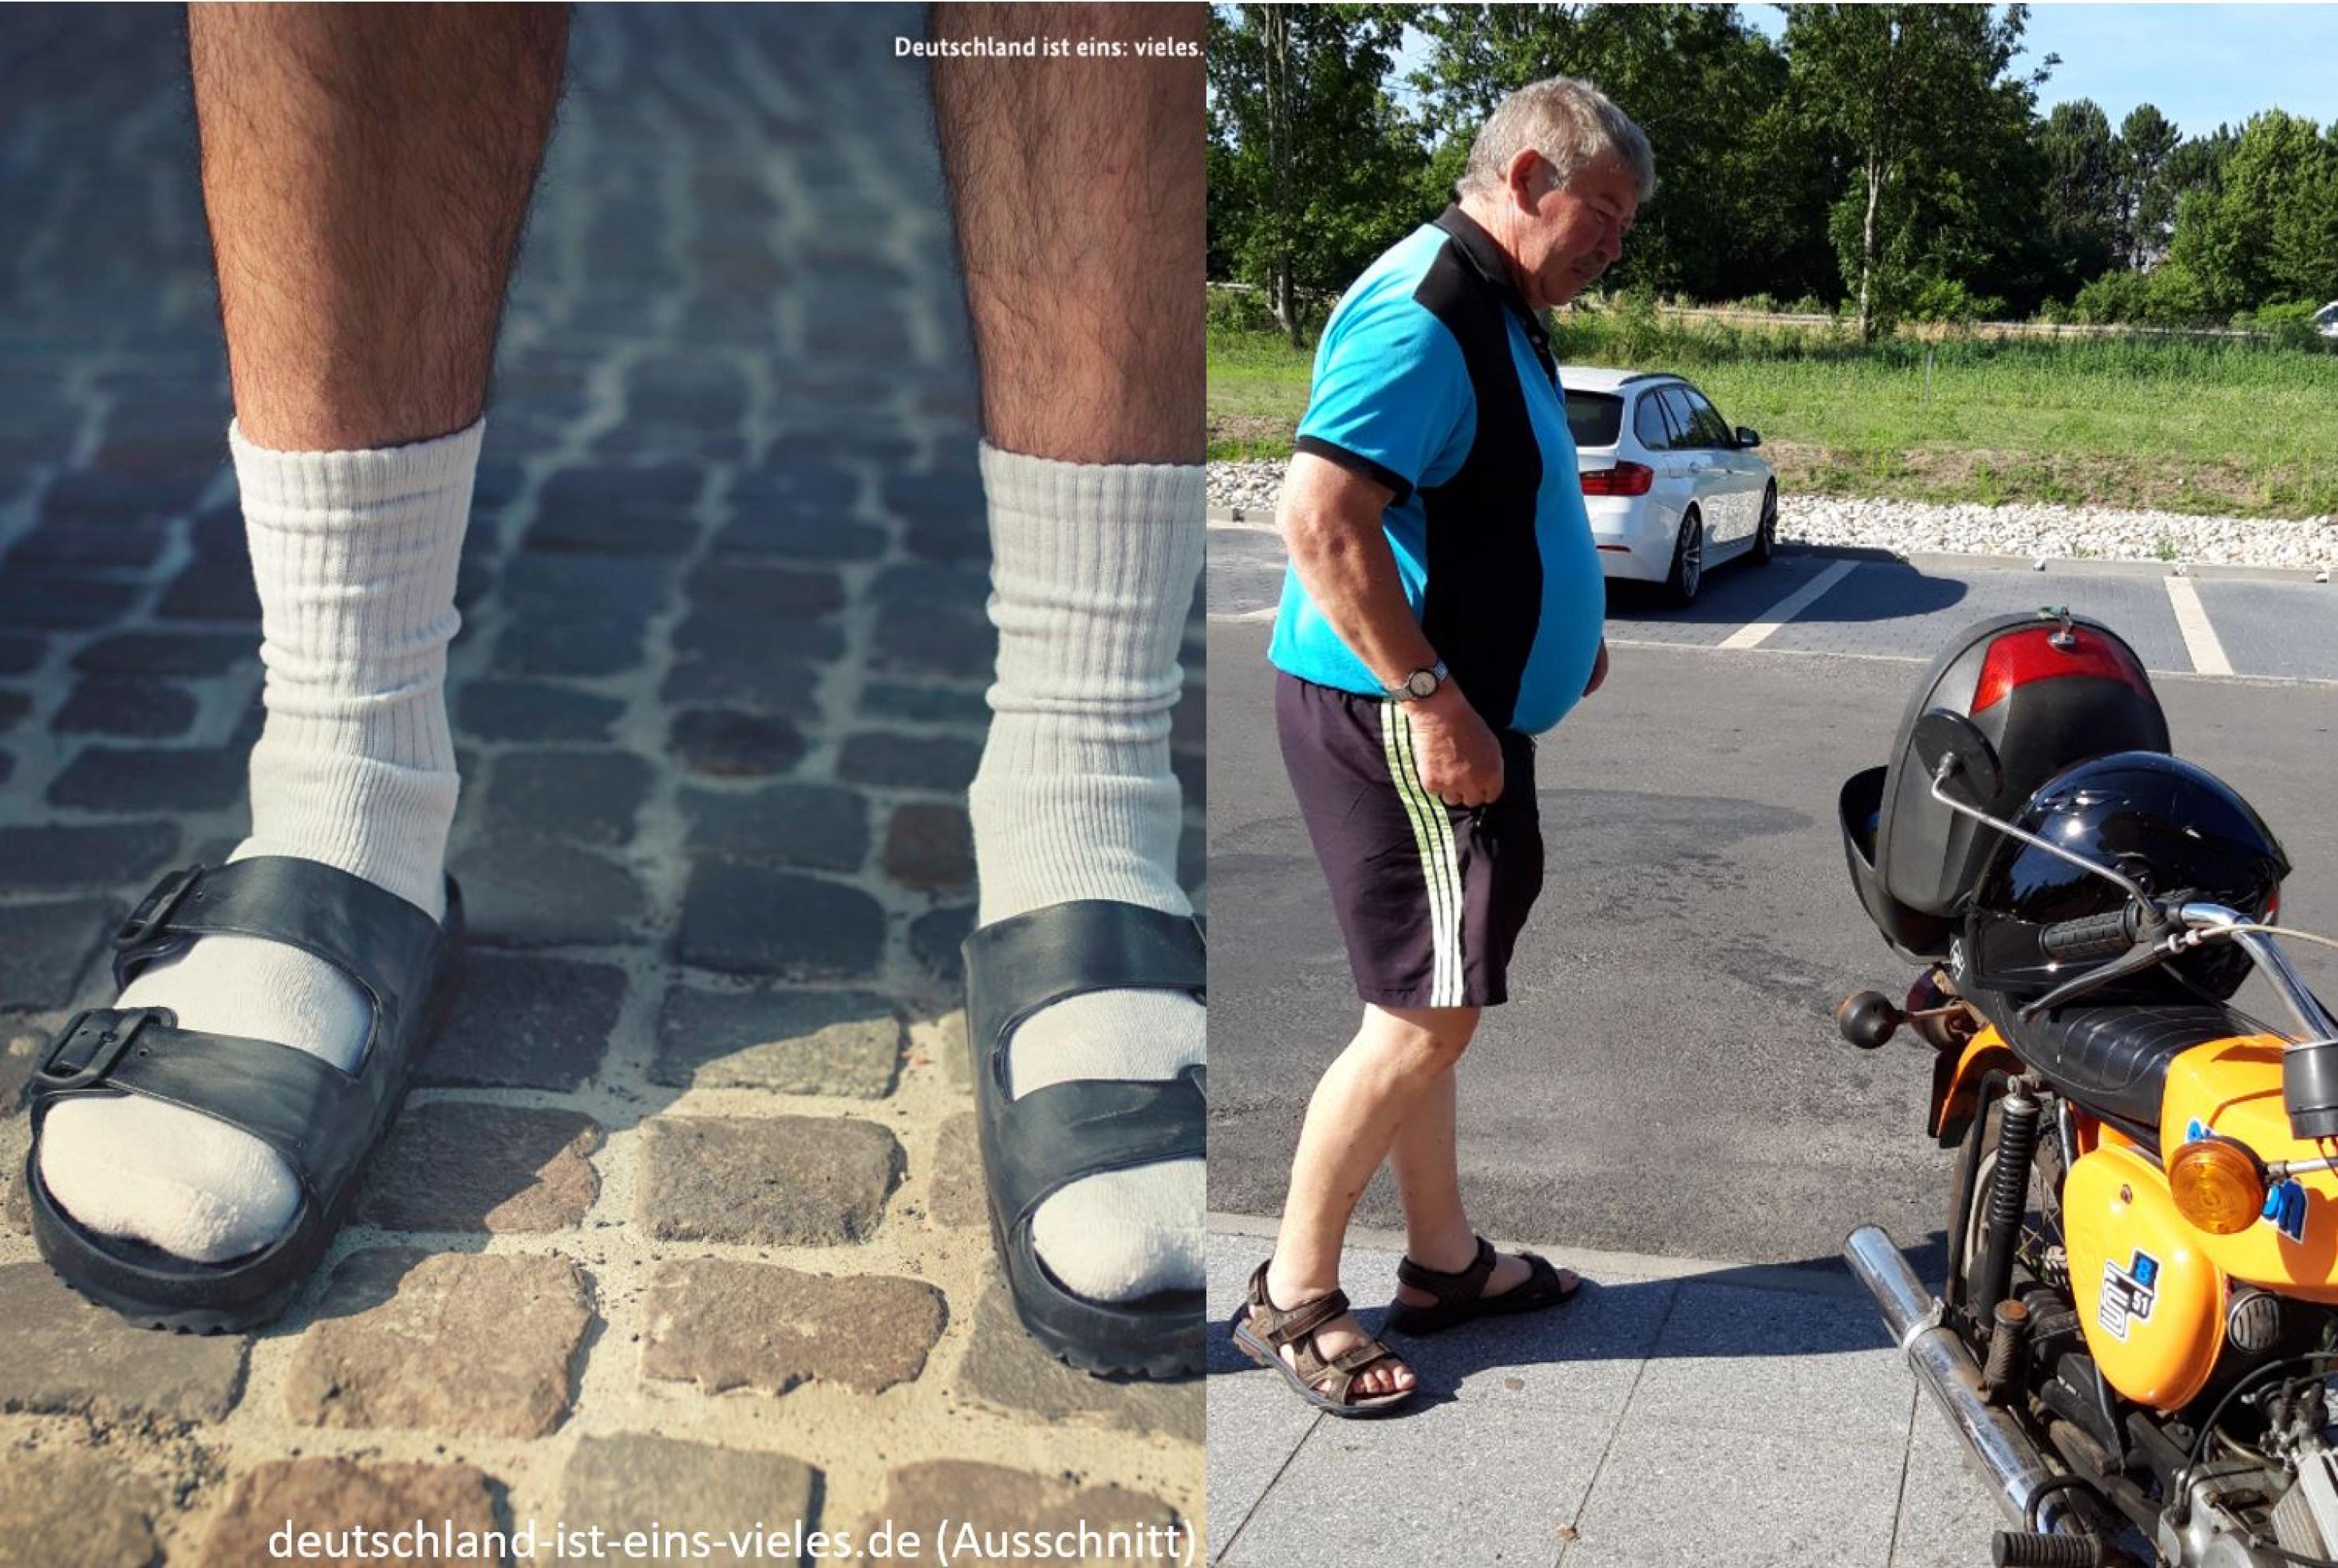 zweigeteiltes Bild: links das Bild der Regierungskampagne, rechts das des RadelndenReporters; beide Bilder zeigen deutsche Sandalenträger.